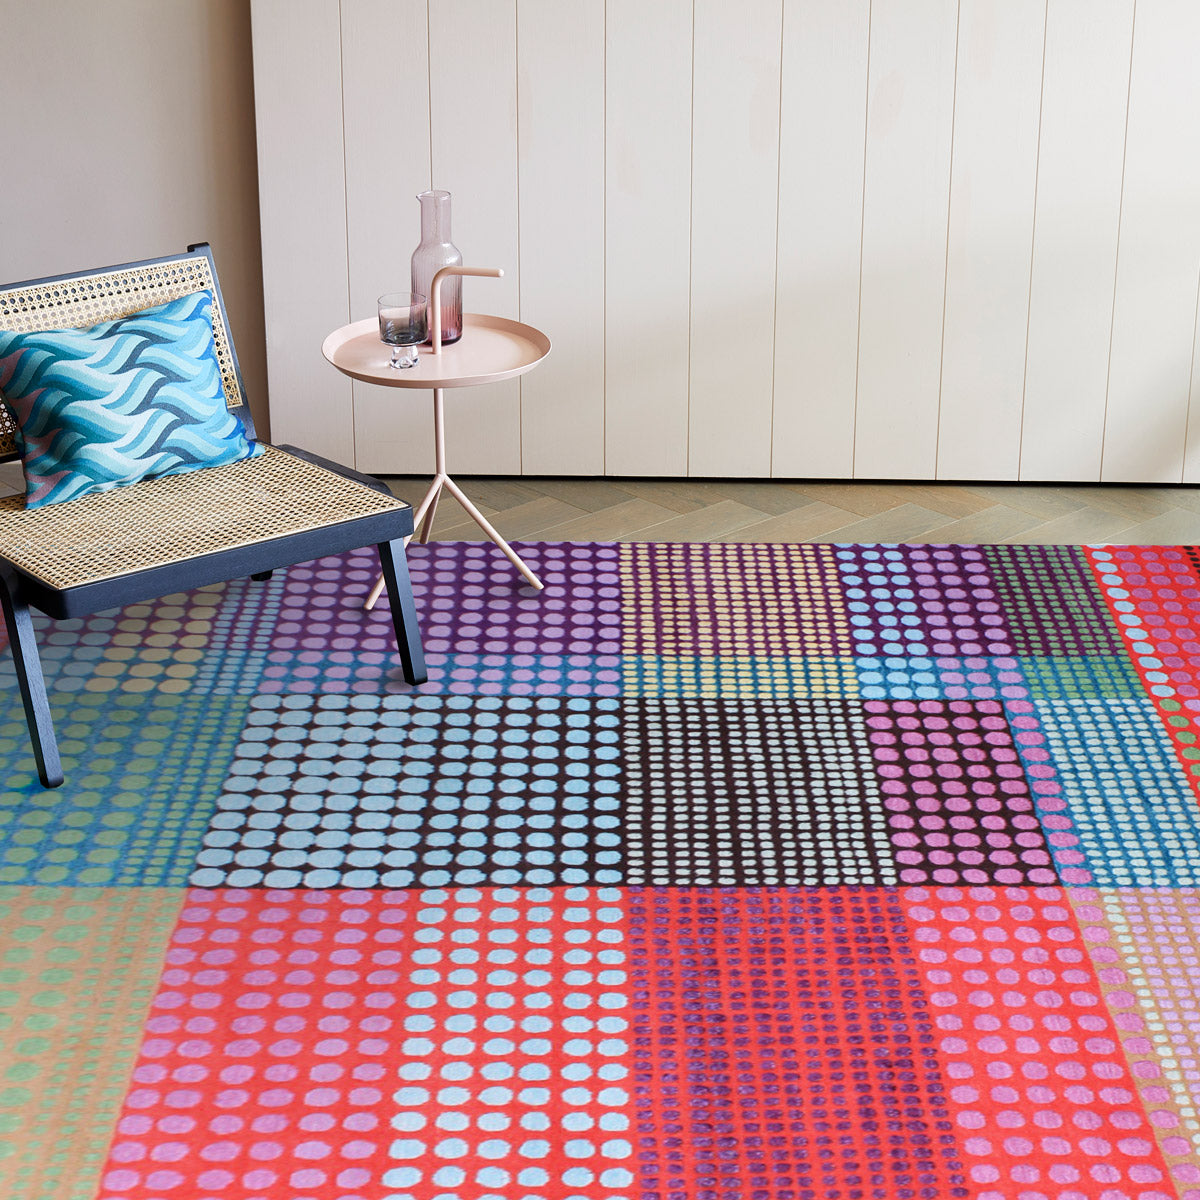 luxury rug, geometric rug, modern rug, wool rug, designer rugs, colourful rug, pink rug